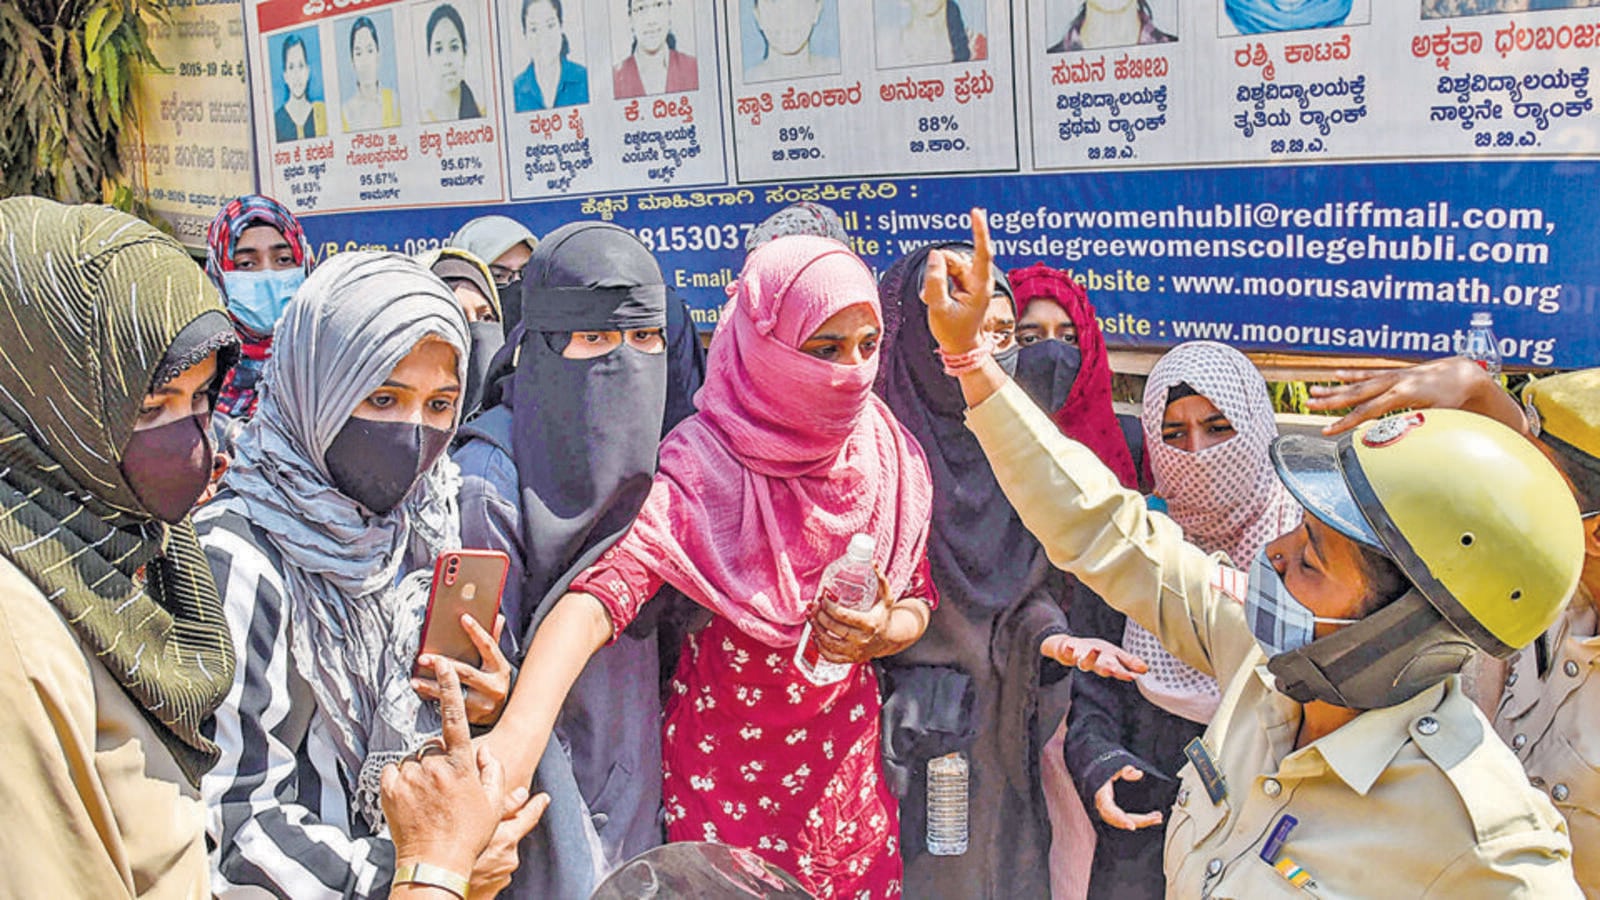 Hijab jihad: Right wing groups in Karnataka seek NIA probe